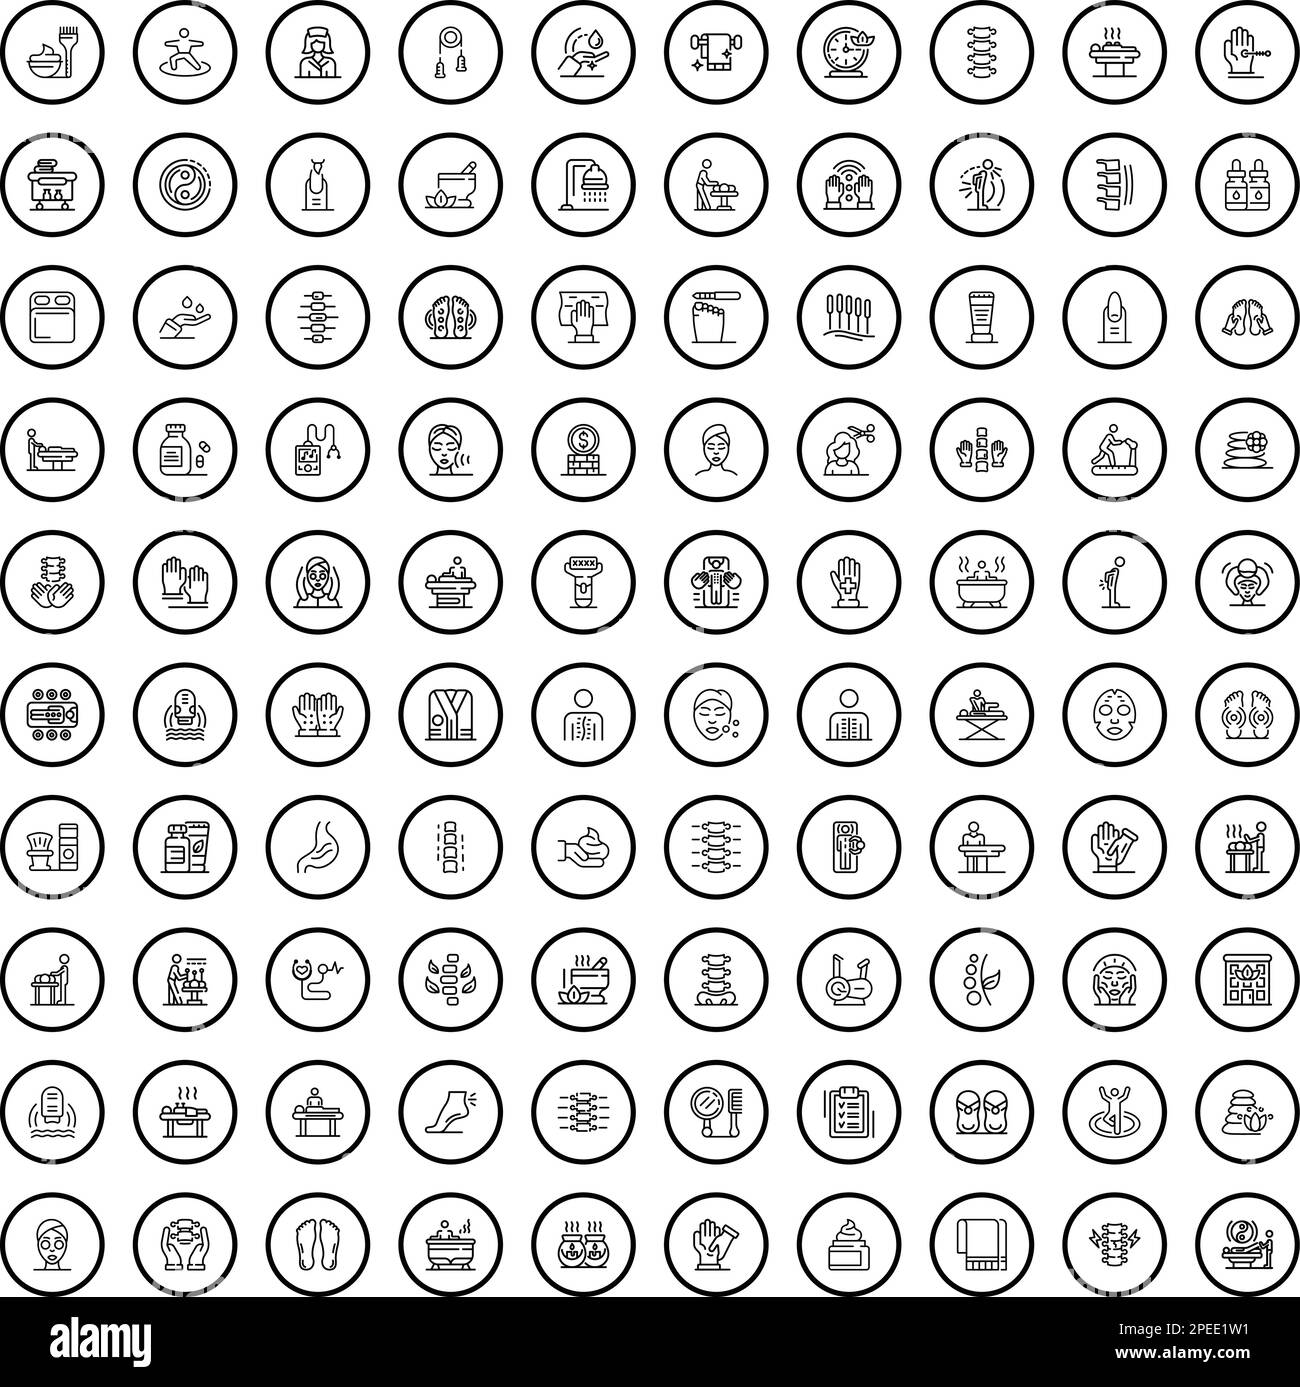 100 Massagesymbole. Skizzieren Sie die Darstellung von 100 Massage-Symbolen, Vektorset isoliert auf weißem Hintergrund Stock Vektor